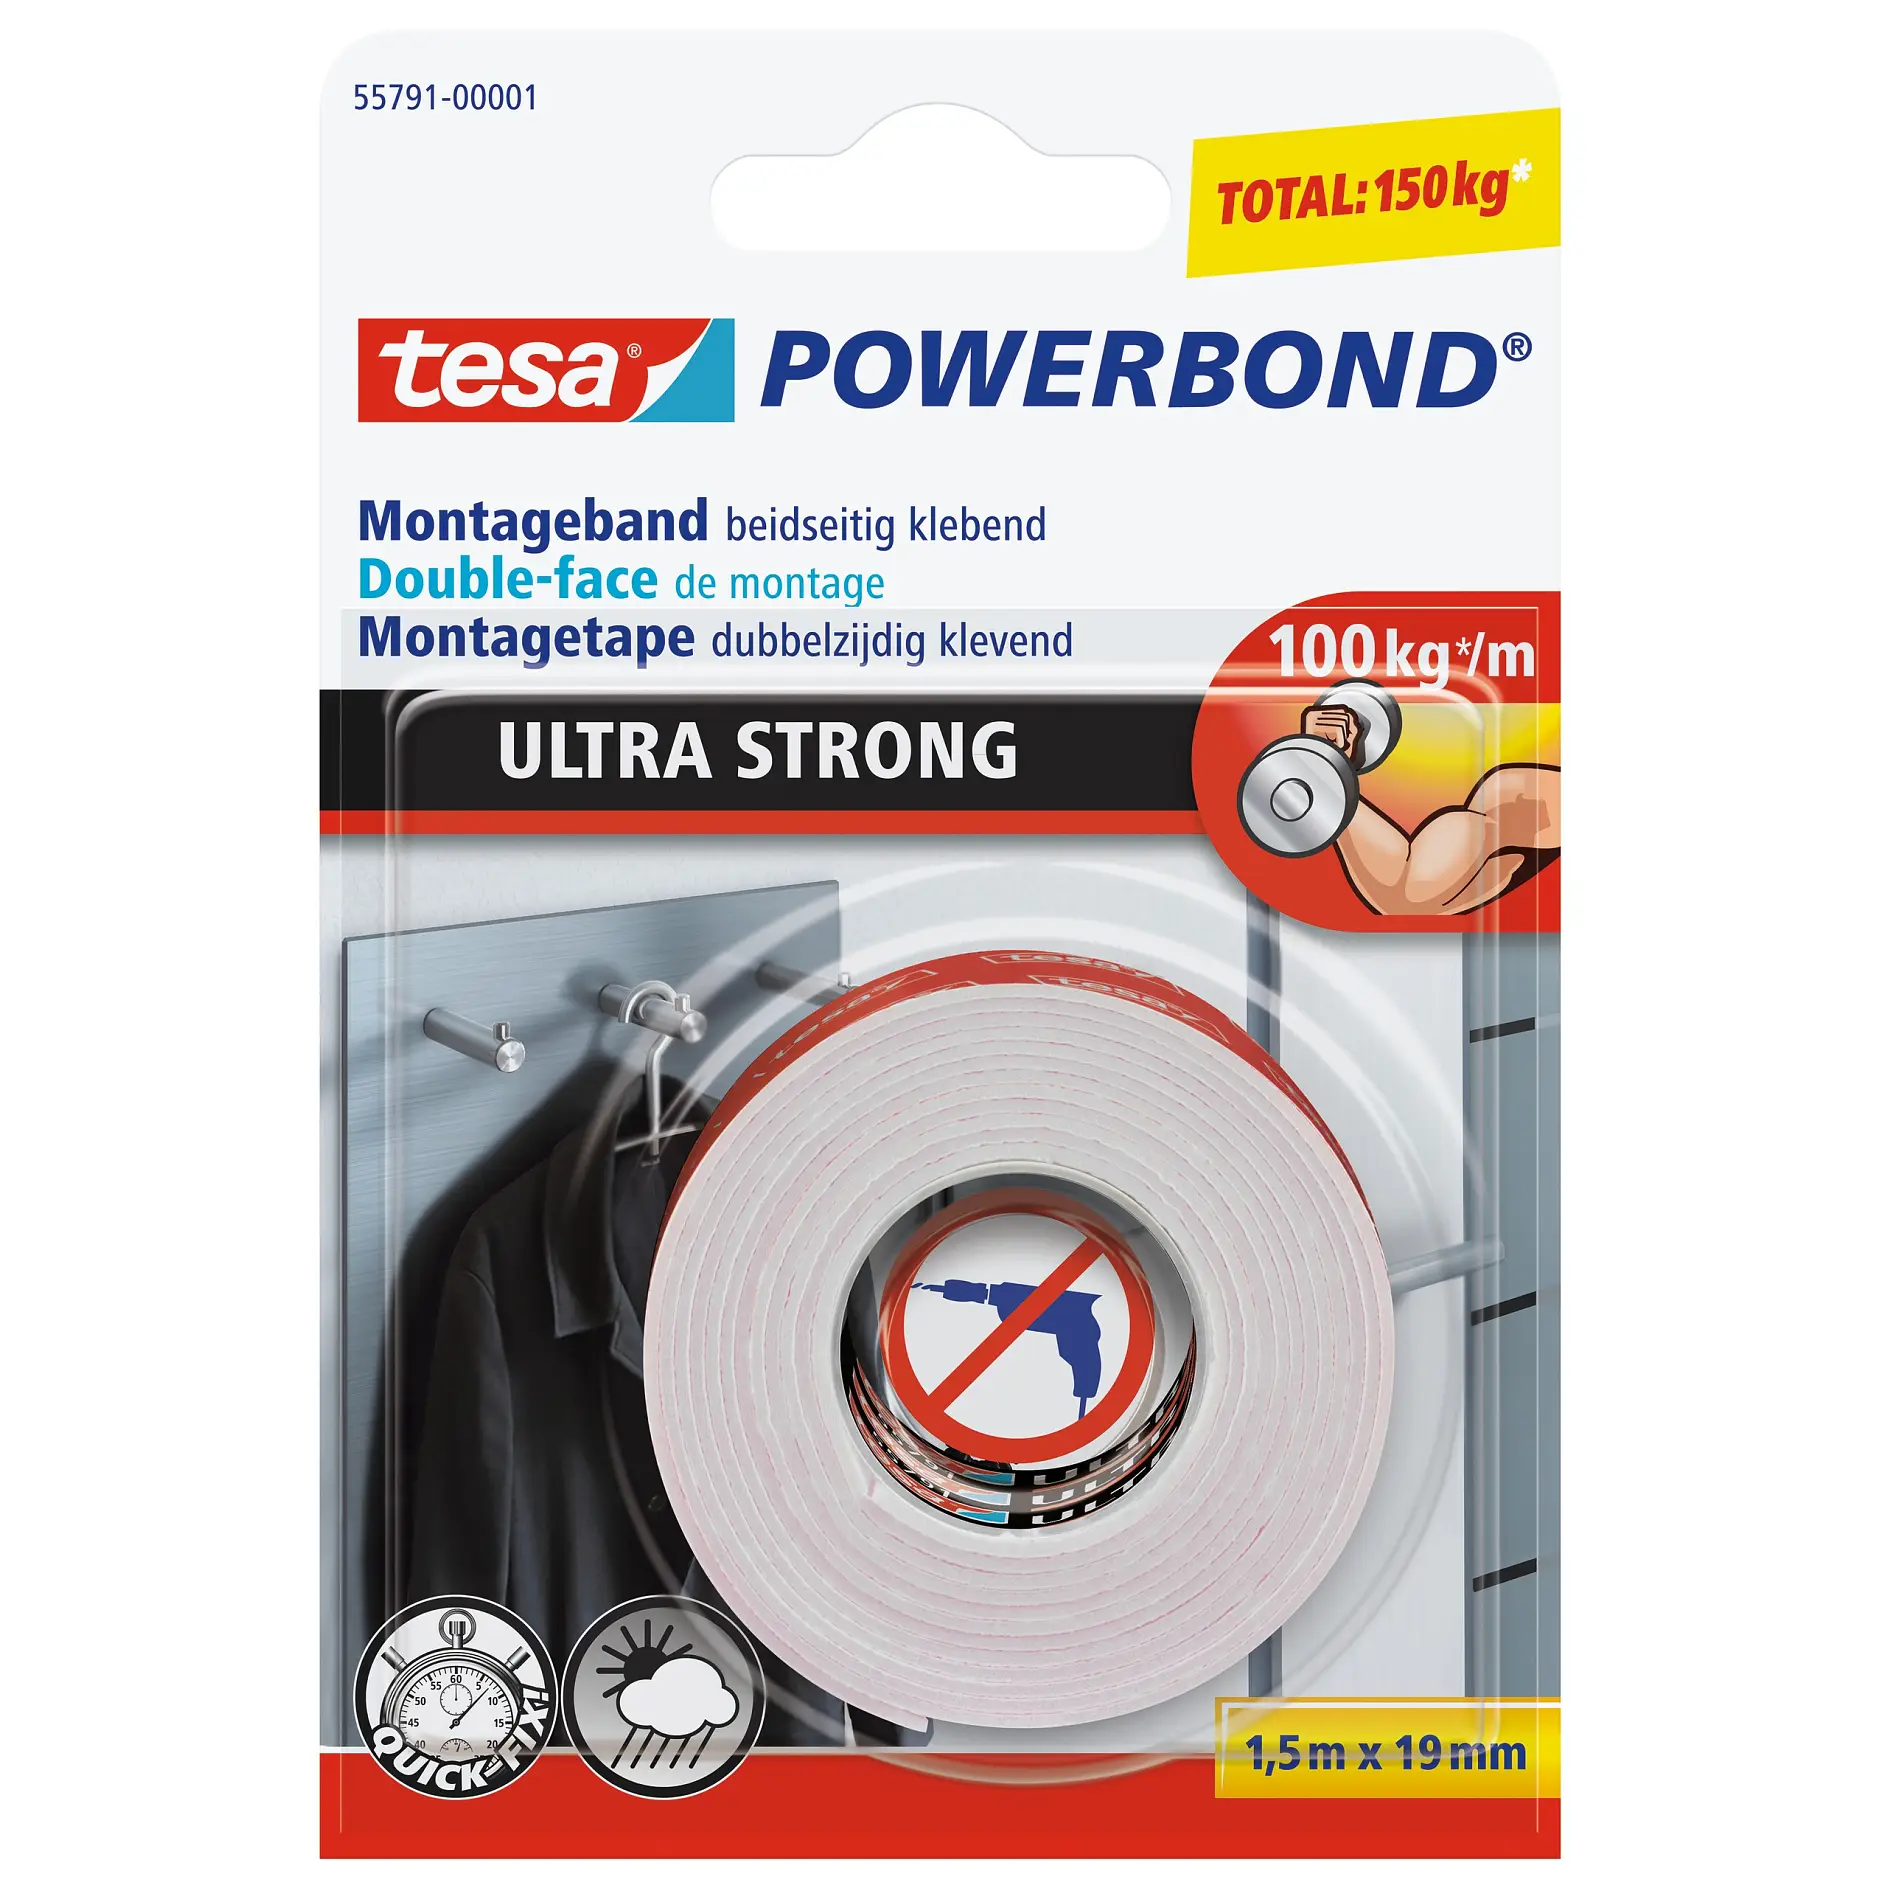 [en-en] Powerbond Ultra Strong 1,5 x 19, LI406